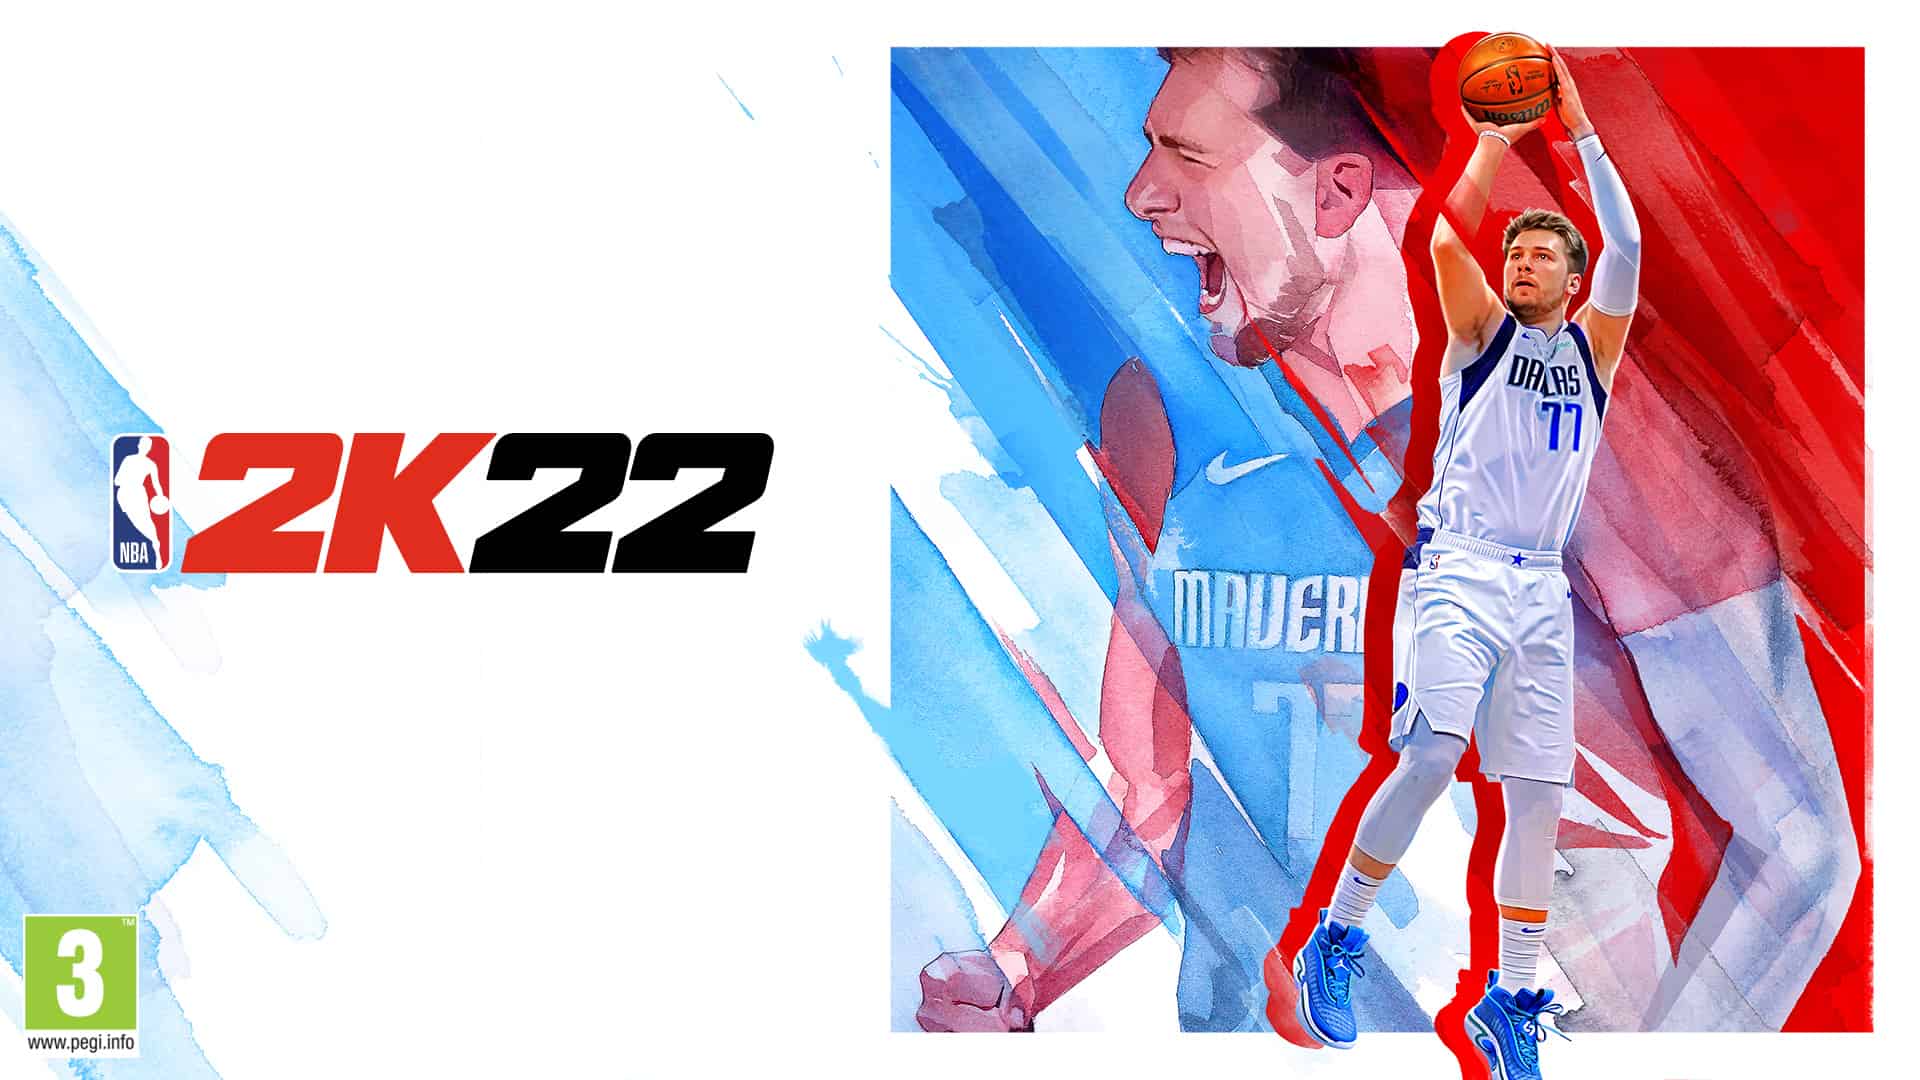 NBA 2K22 : Luka Doncic, Candace Parker et trois légendes sur les superbes couvertures